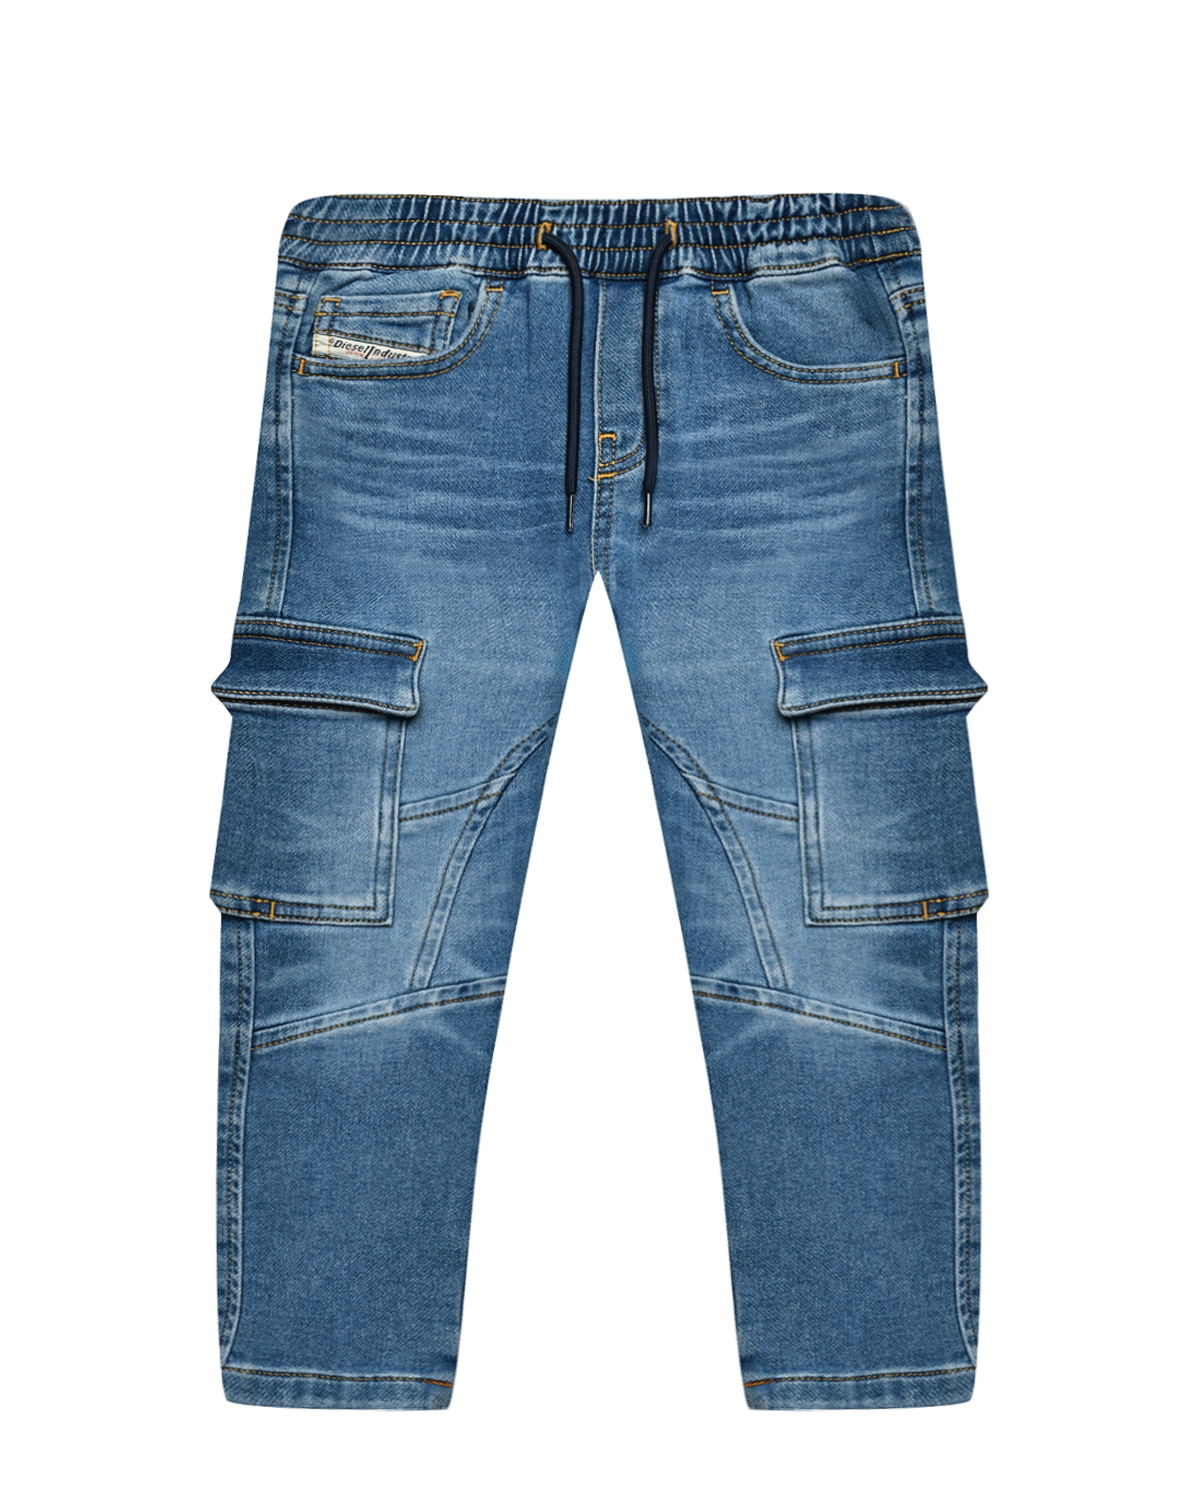 Джинсы на шнурке с накладными карманами Diesel джинсы с карманами карго голубые diesel